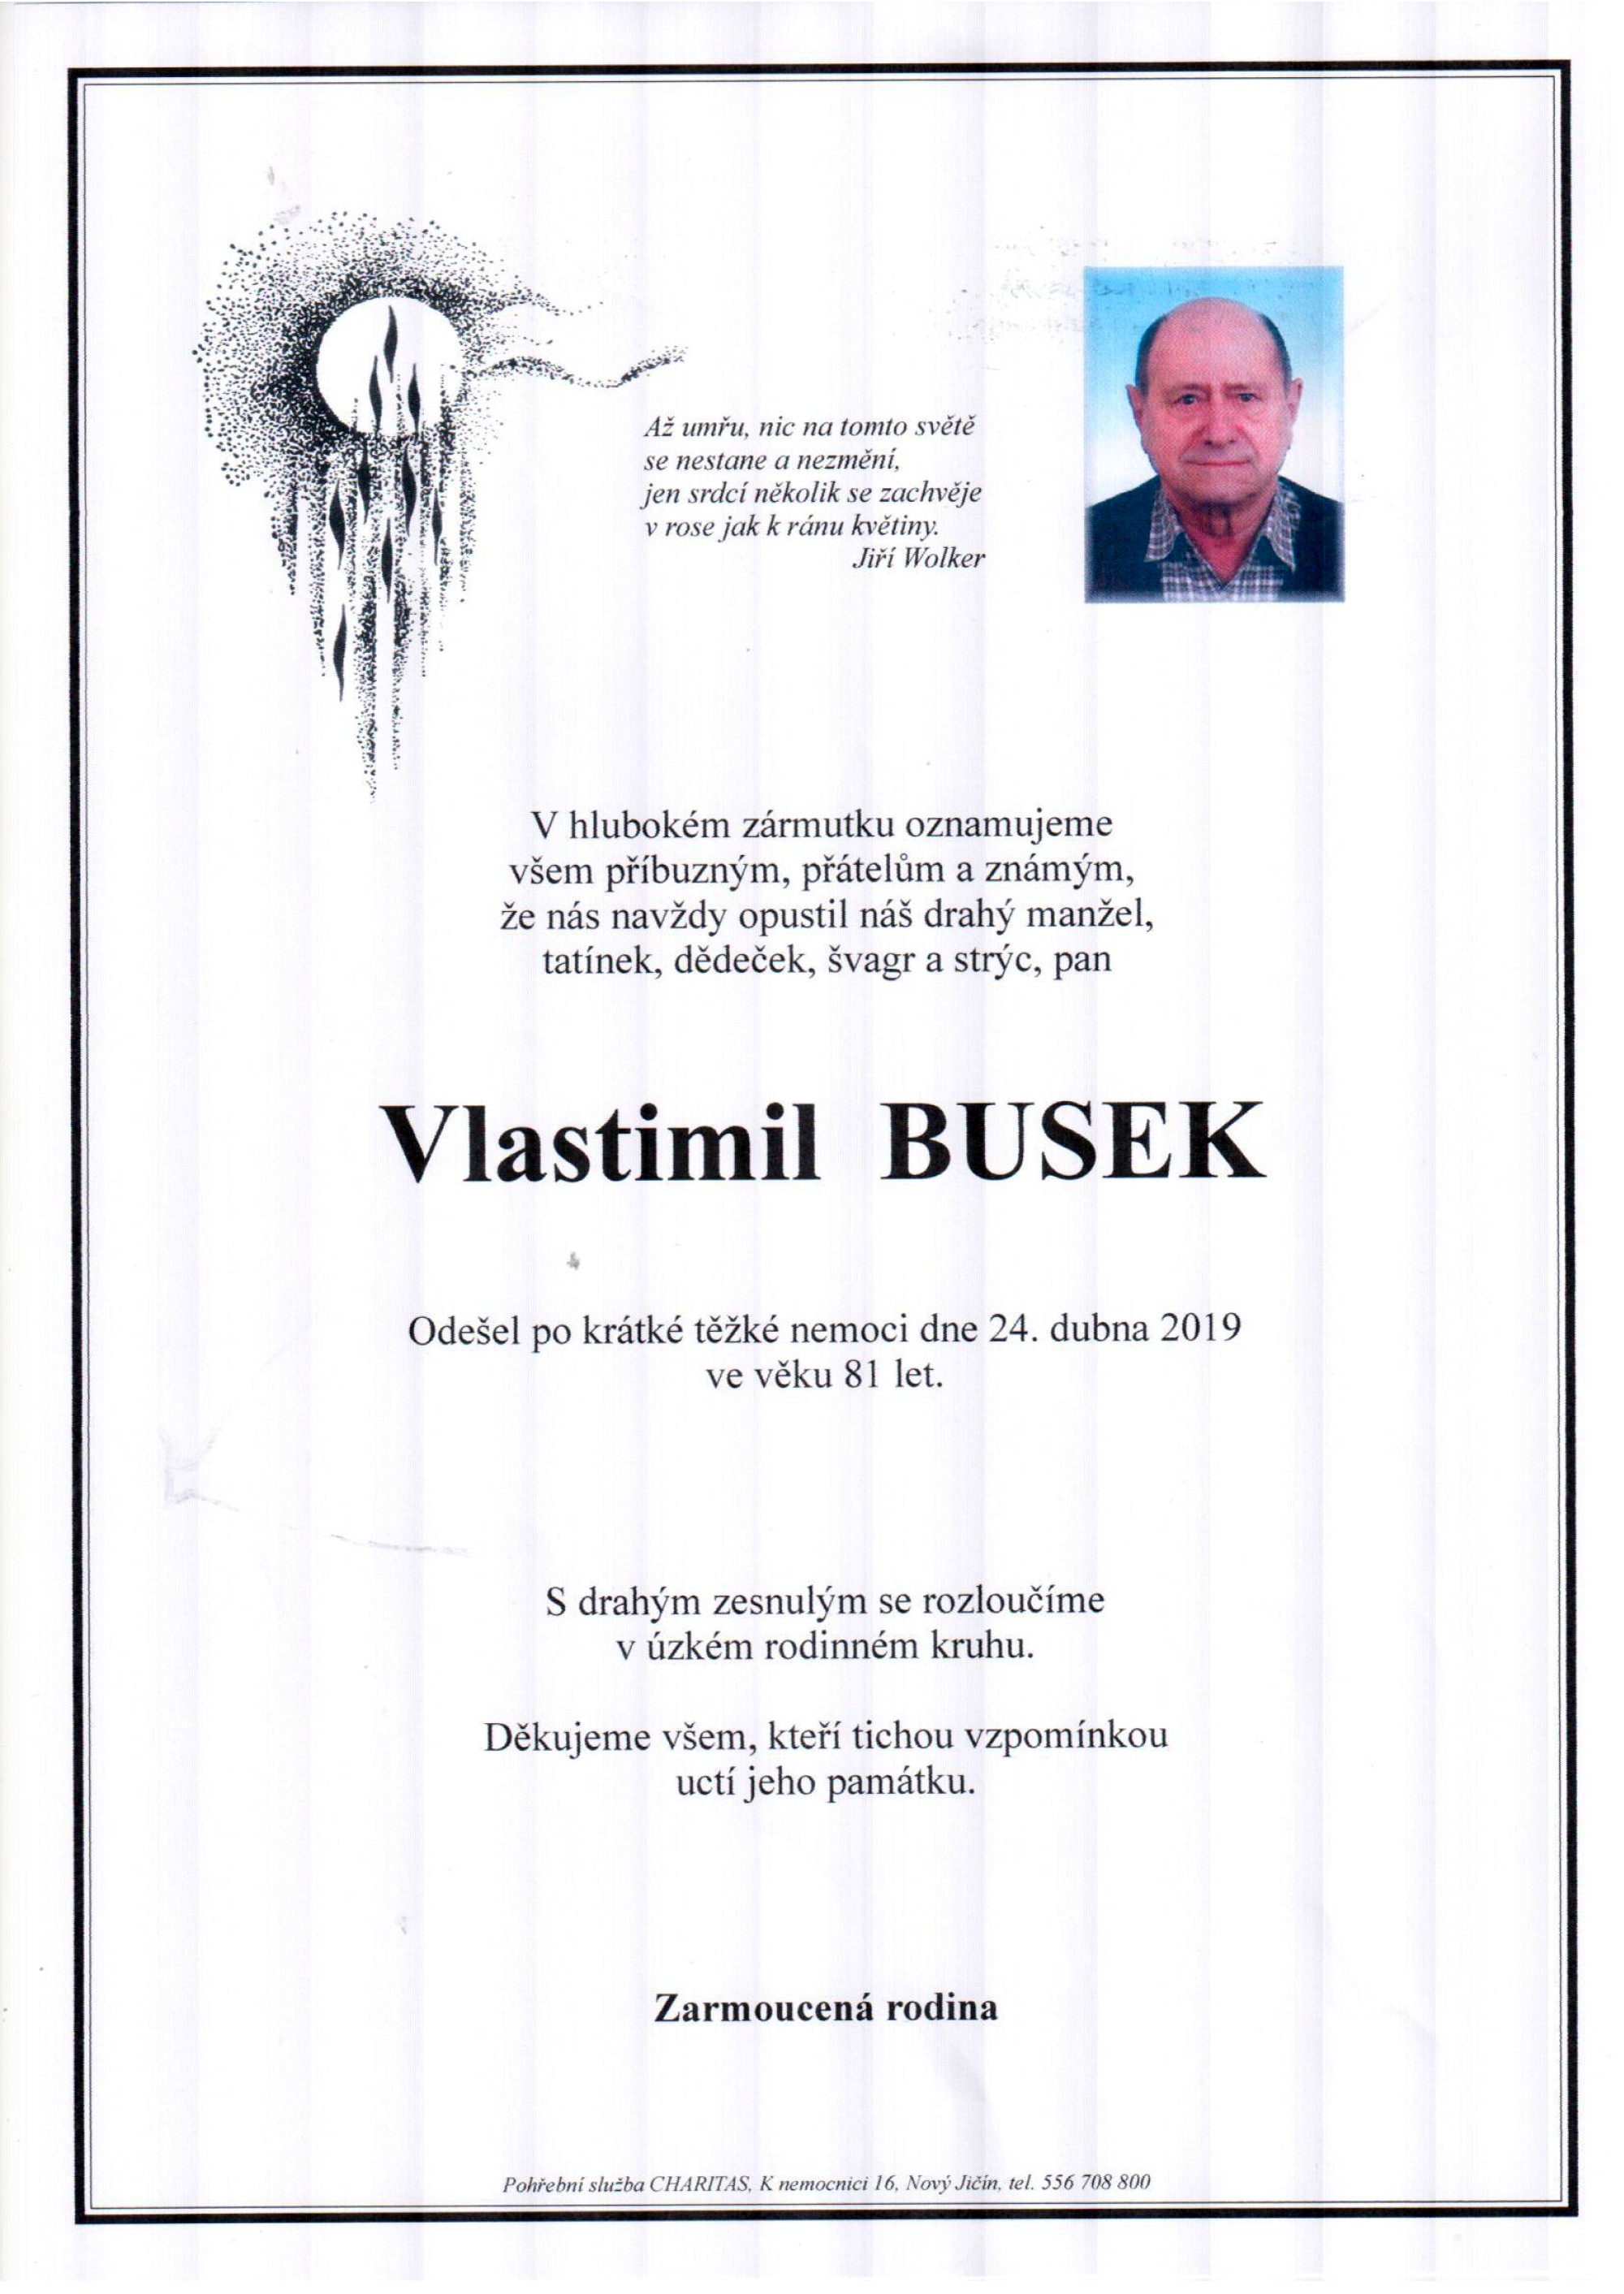 Vlastimil Busek